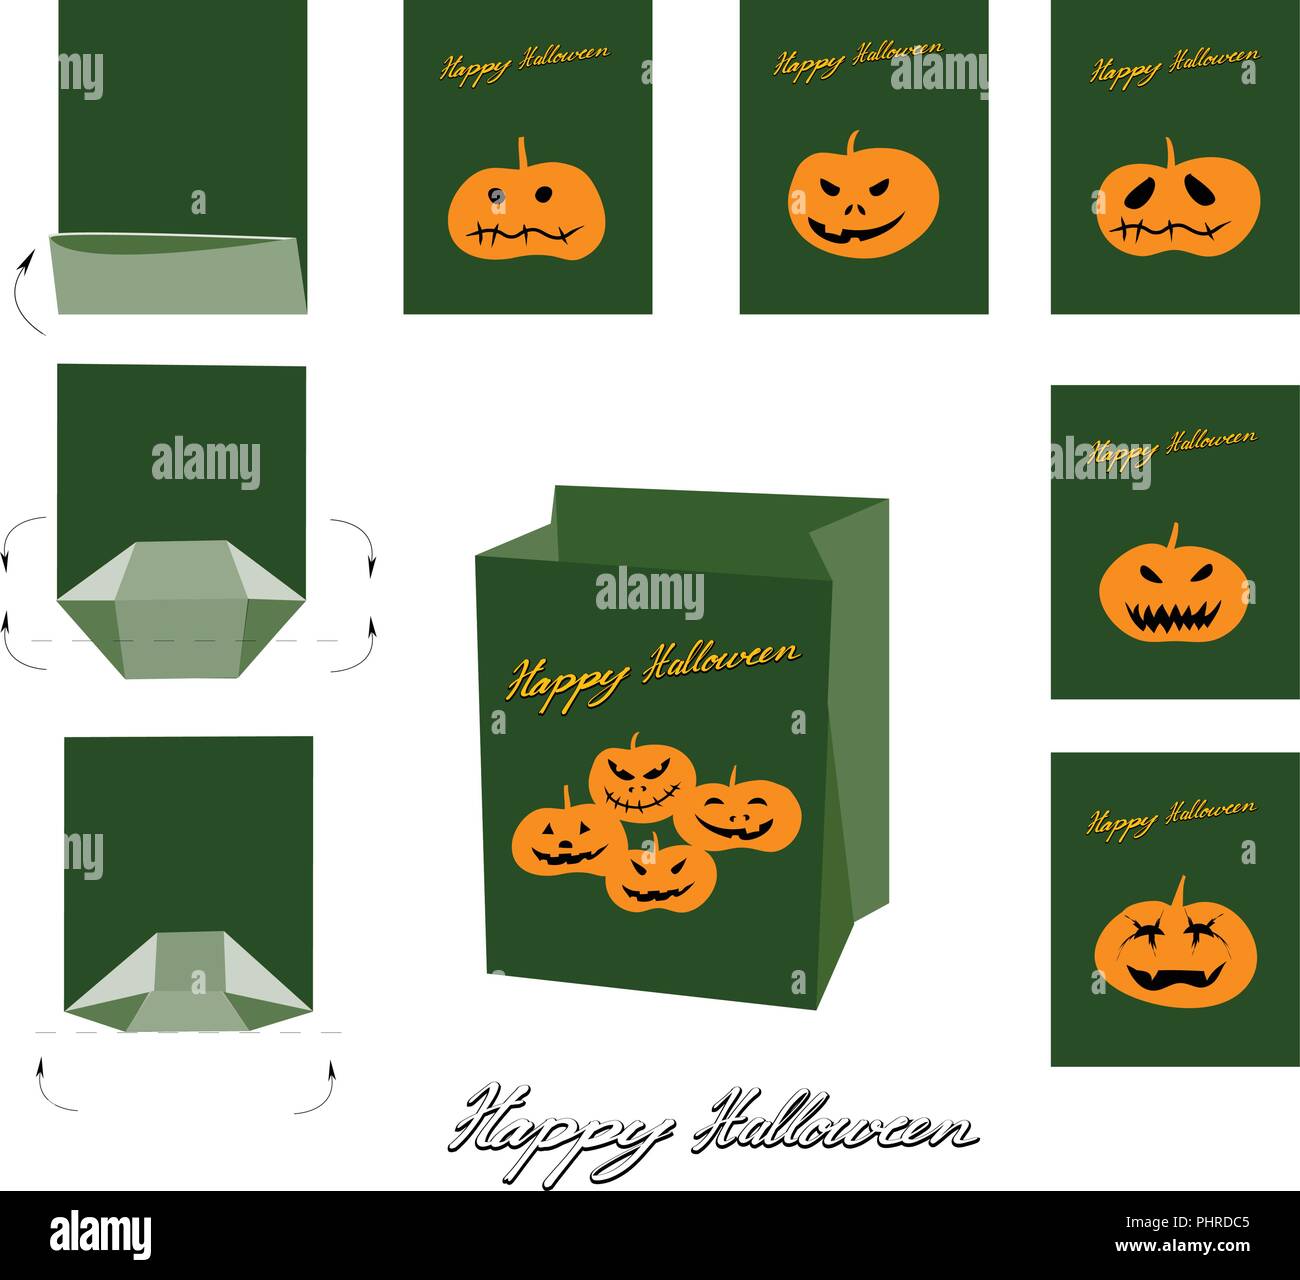 Illustration Set of Happy Jack-o-Lantern Pumpkins and Evils Paper Bag Mock Up, Package Design For Halloween Celebration Party. Stock Vector